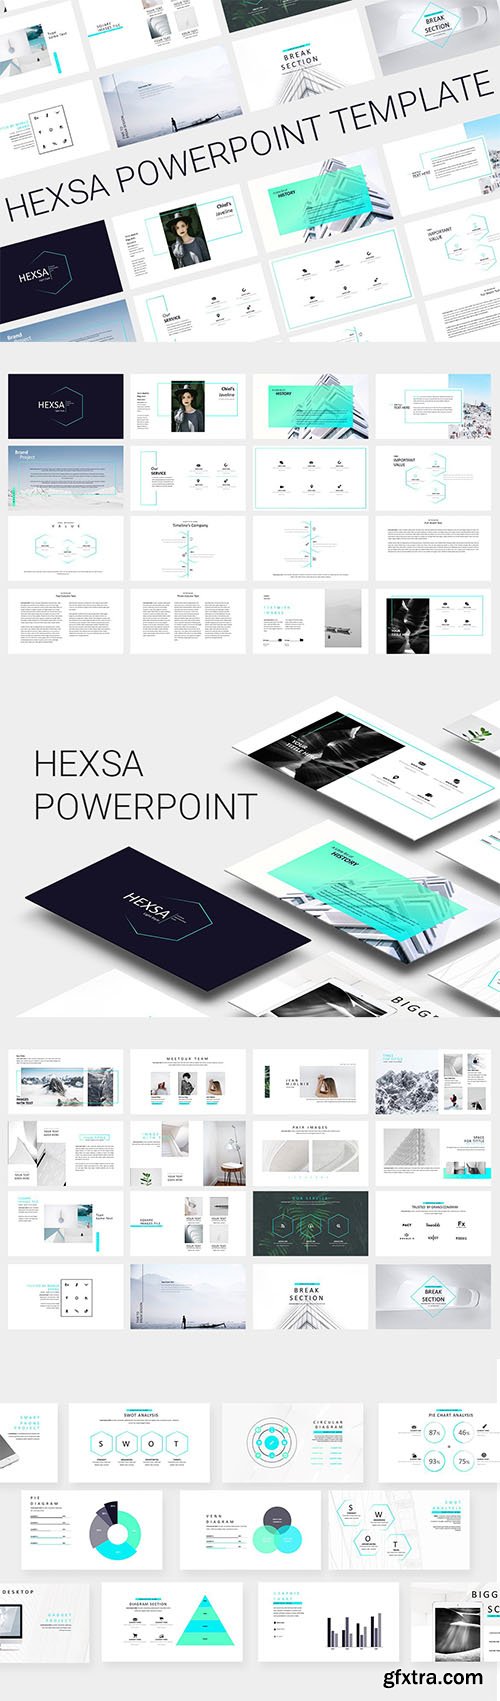 Hexsa Powerpoint